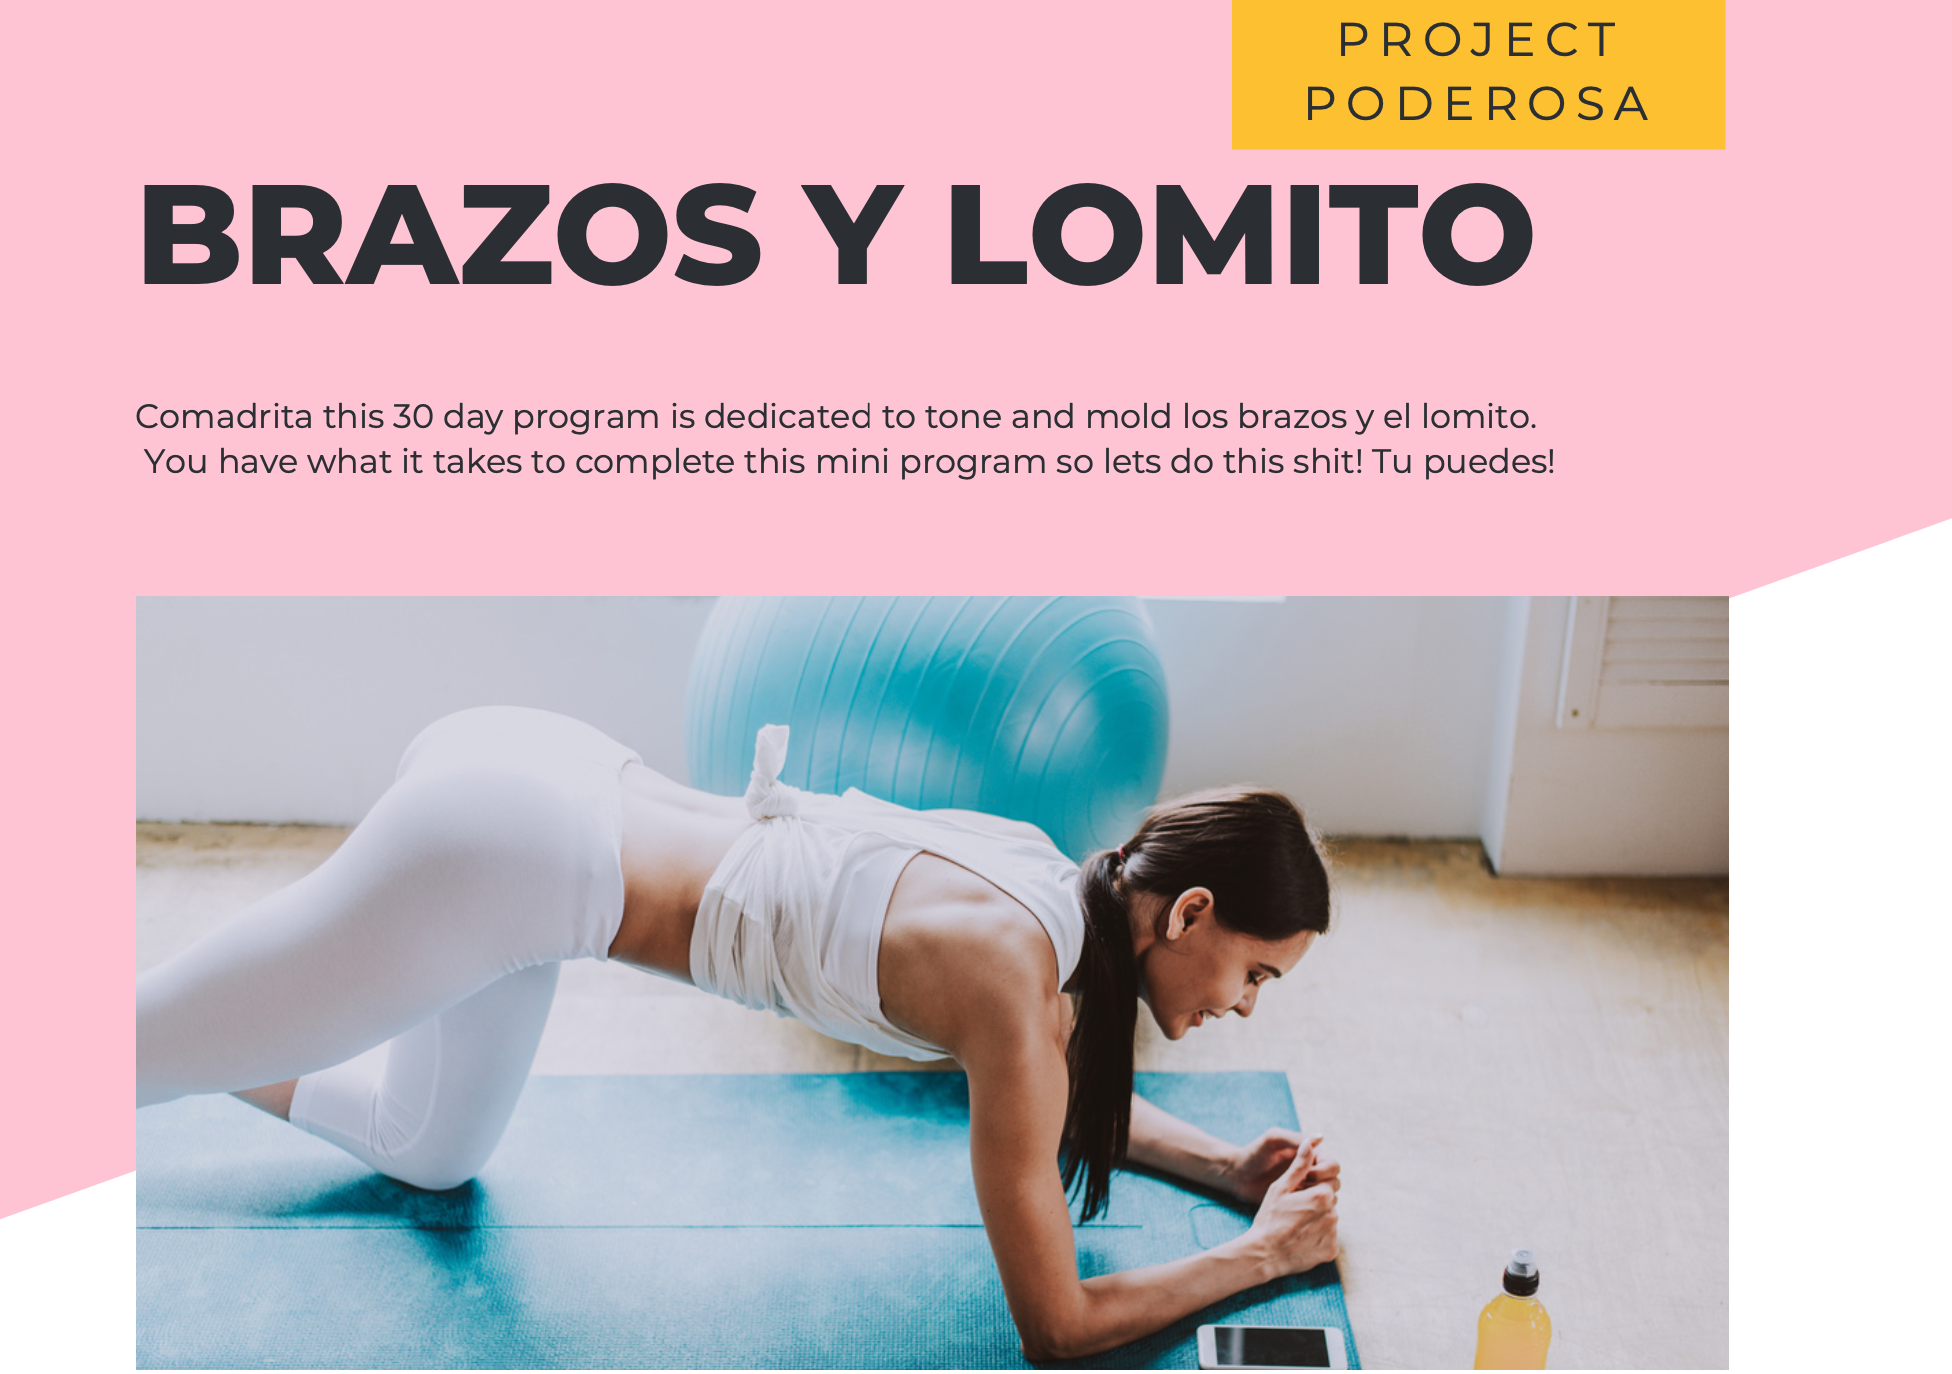 Mold Los Brazos Y Lomito Program